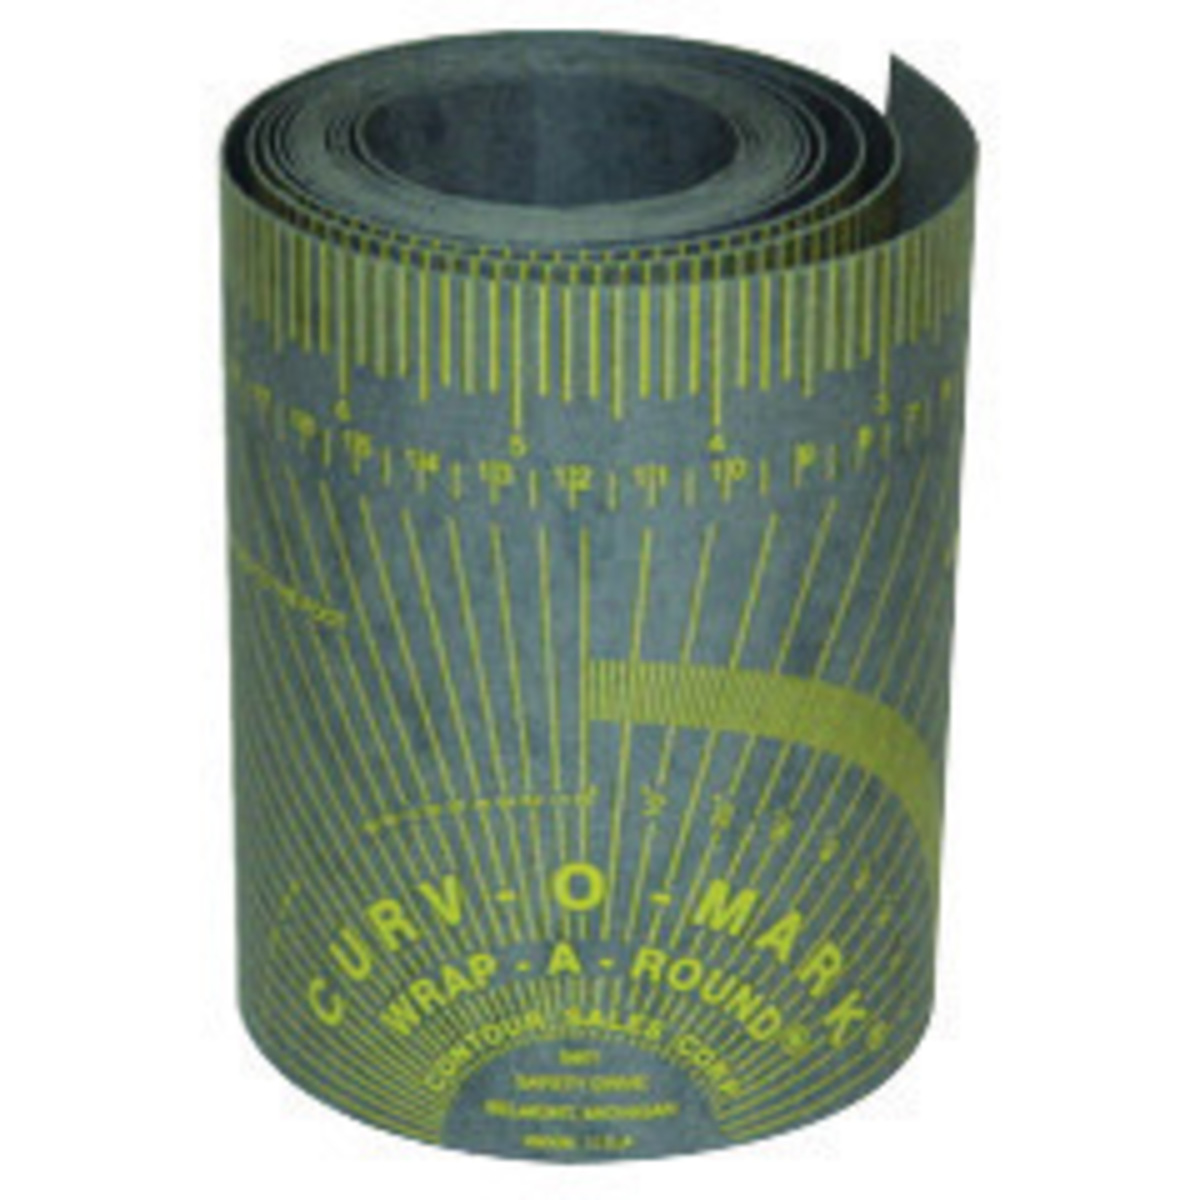 1 Noir Jackson Safety Curv-O-Mark Wrap-A-Round Règle de soudure/raccord de tuyauterie 3.88 x 4 